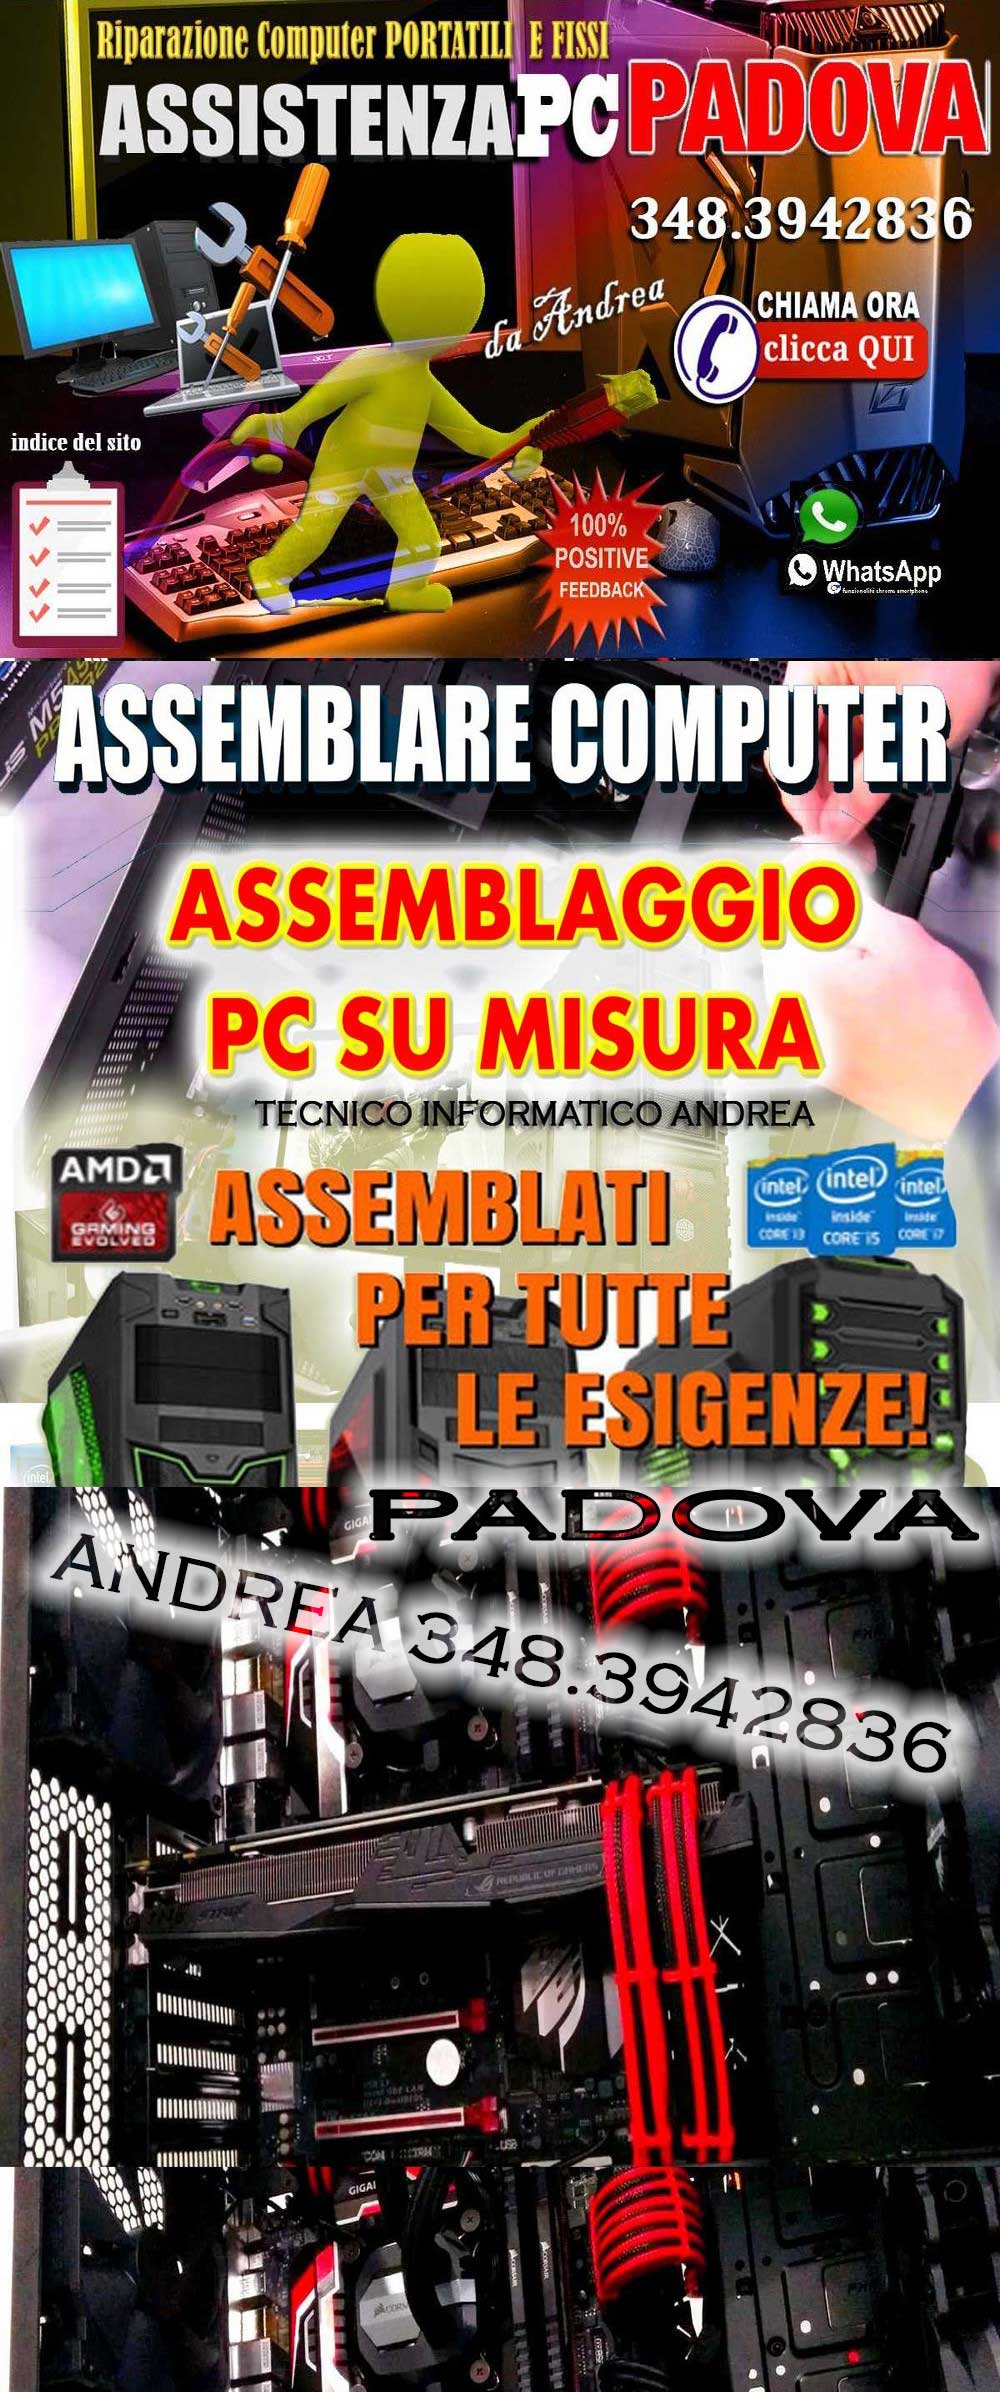 http://www.andrearizzo.com/assemblati-pc-assistenza-computer/